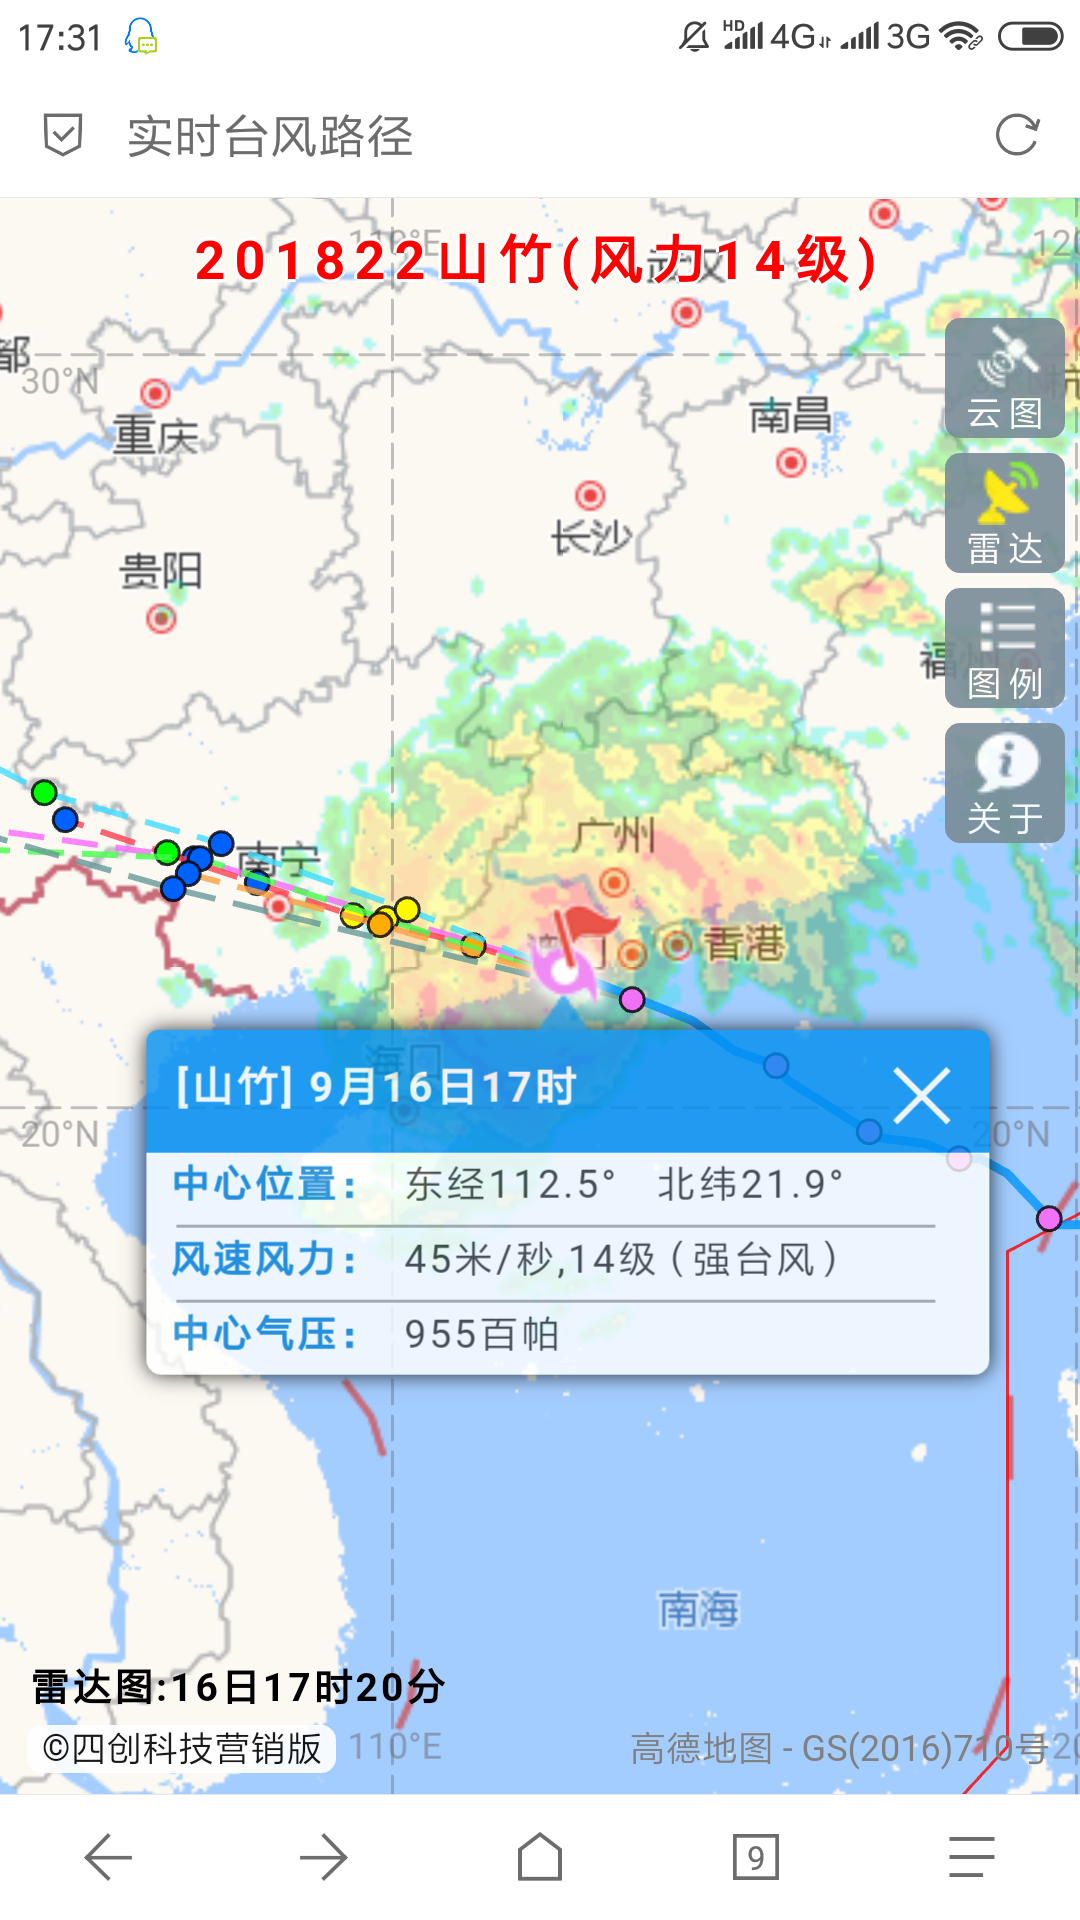 山竹超强台风实时在线查看路径,监控画面